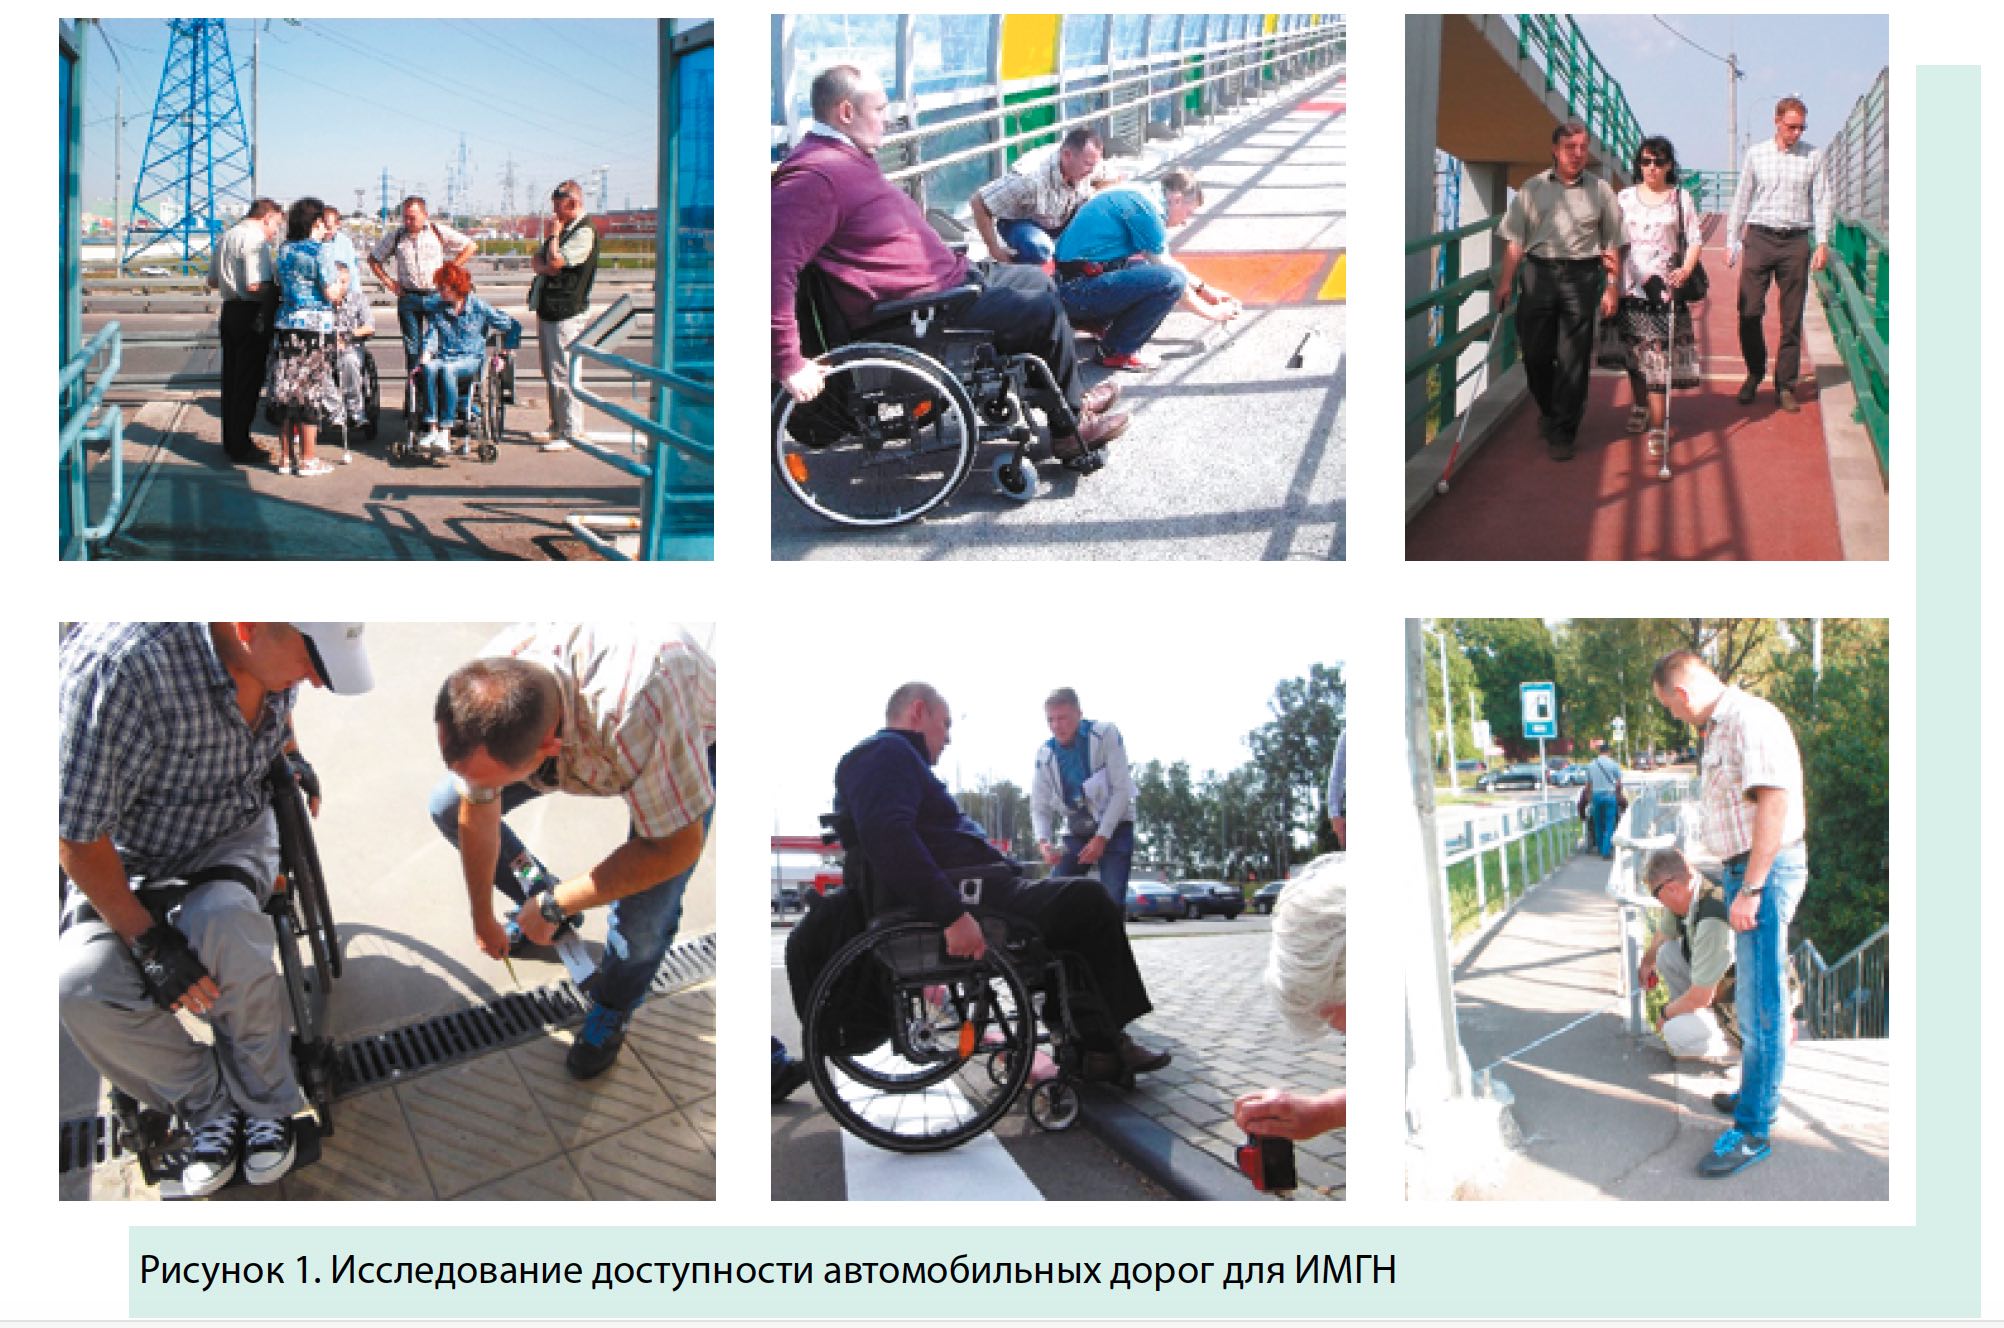 Транспортная доступность для инвалидов. Безбарьерная среда для инвалидов колясочников в Берлине. Инфраструктура для инвалидов. Маломобильные группы населения. Транспорт для инвалидов.